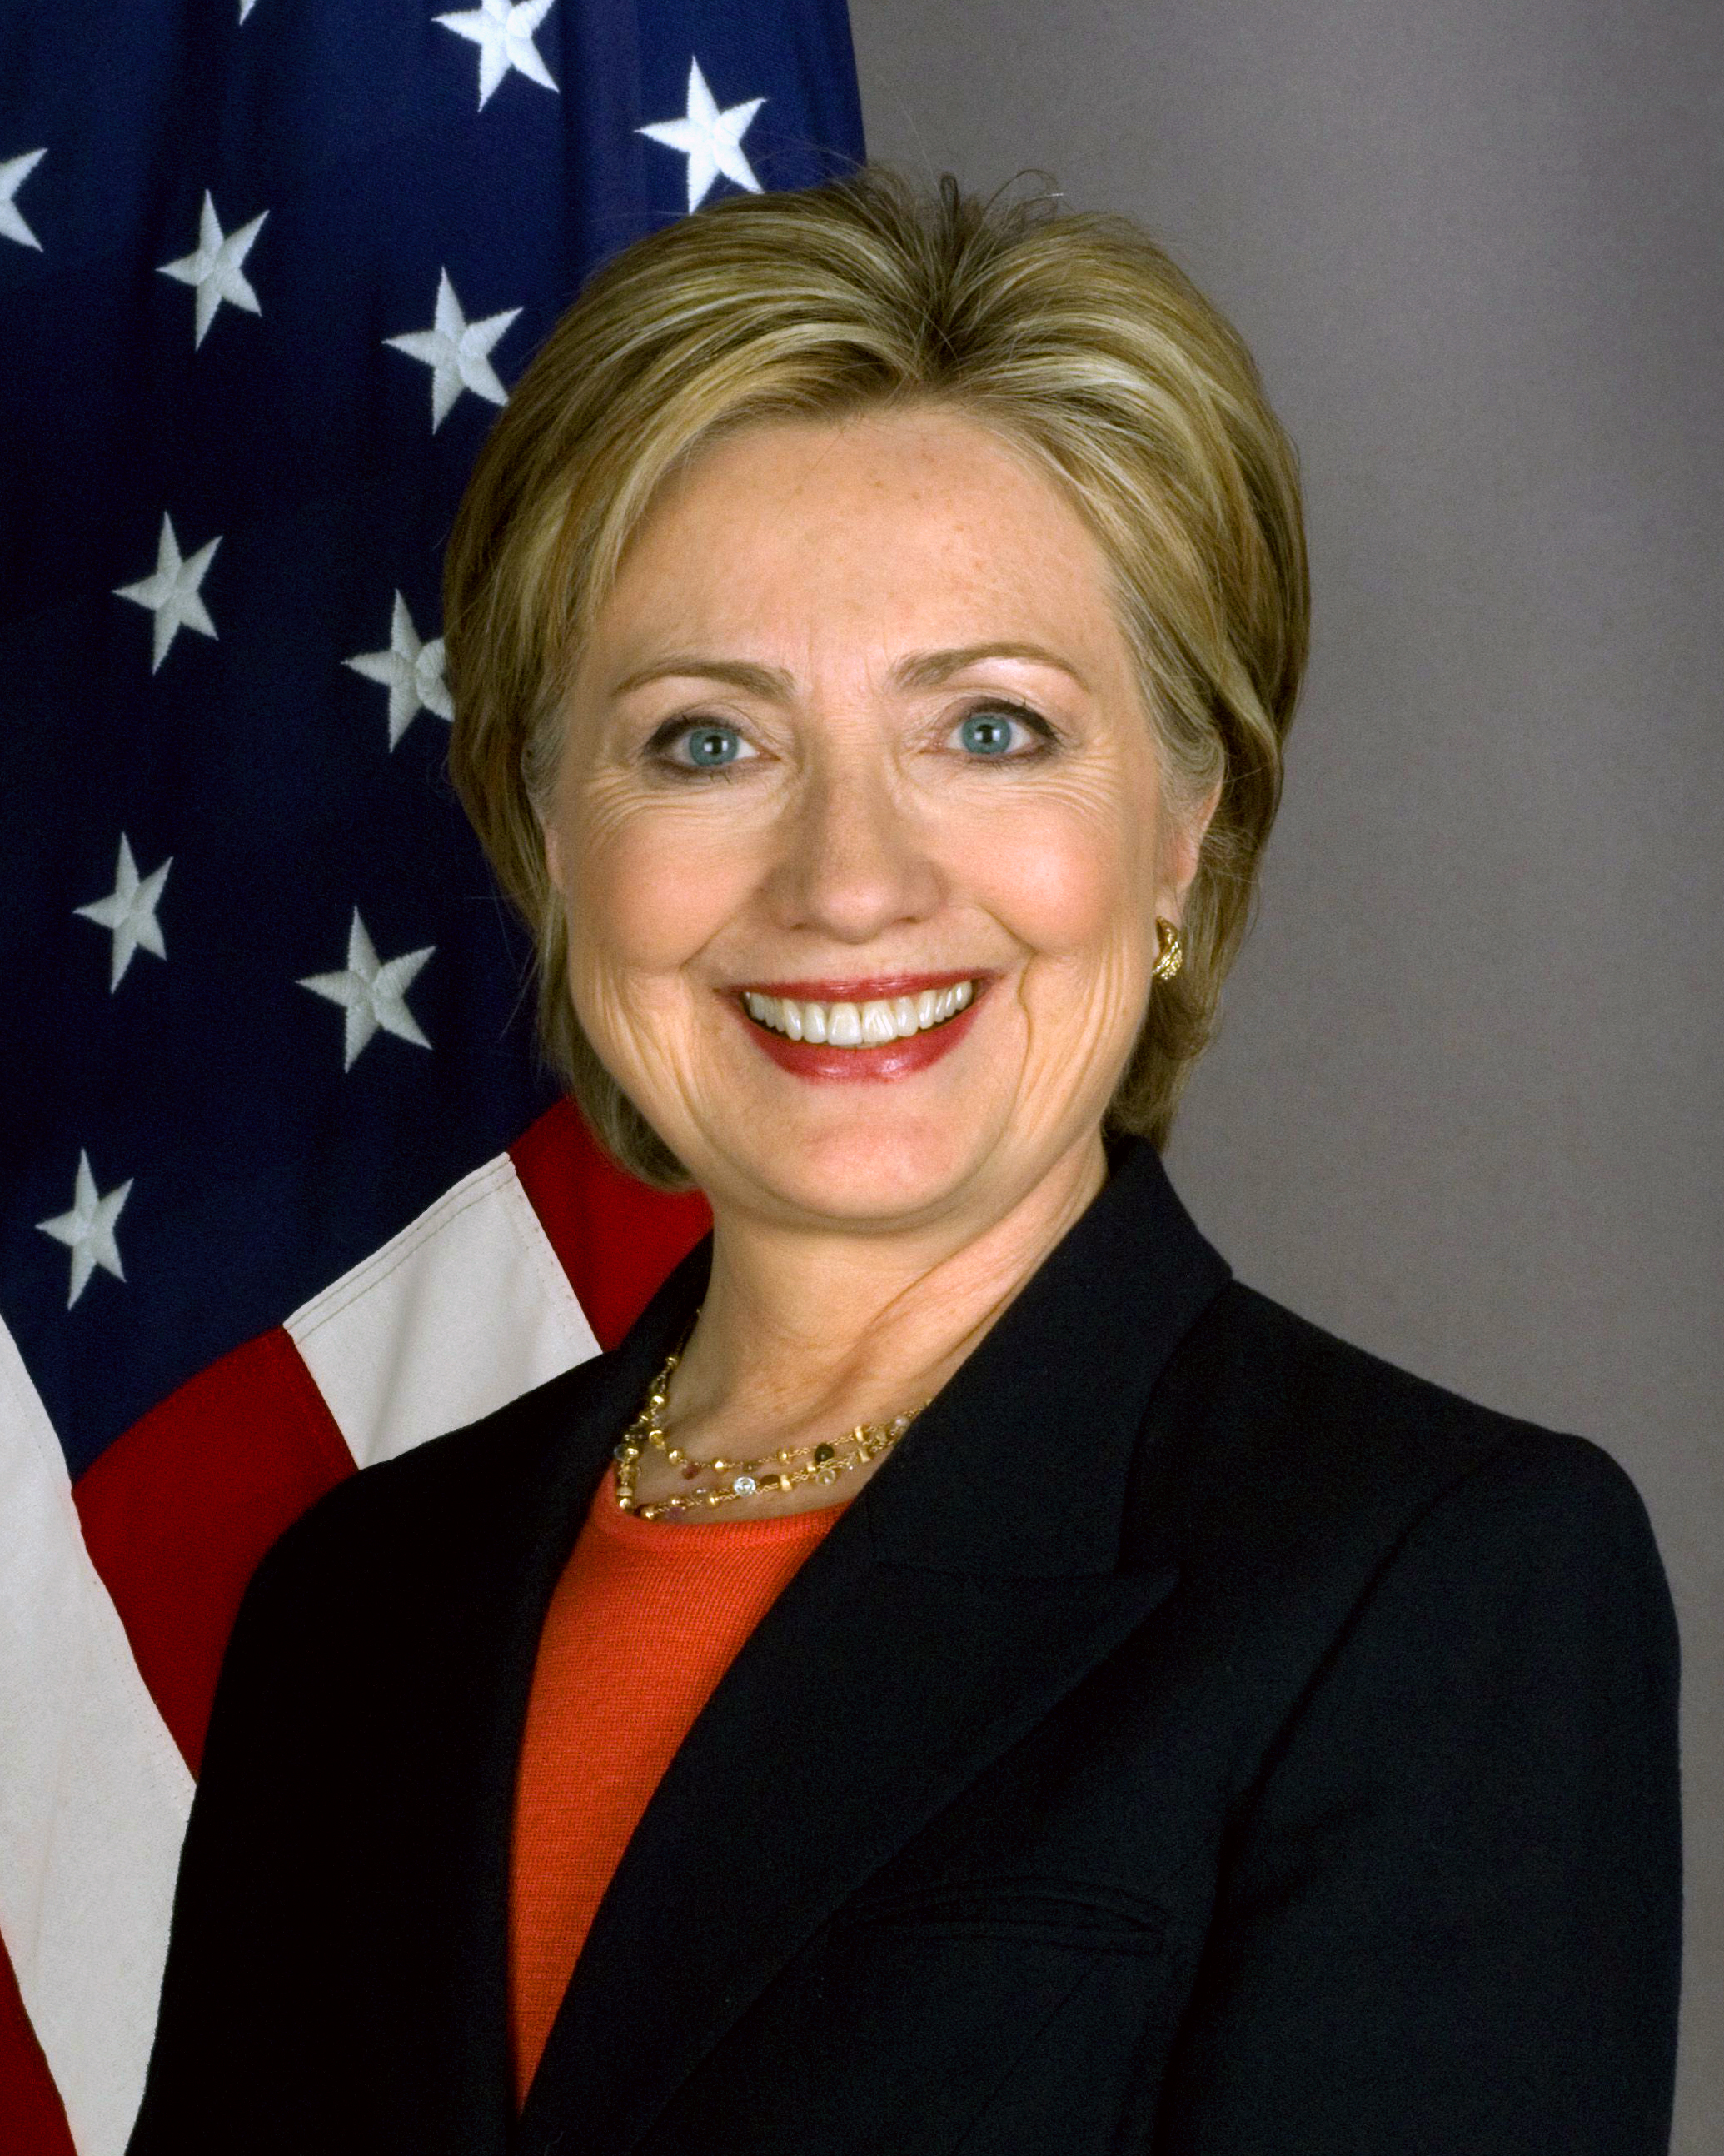 Официальный портрет госсекретаря США Хиллари Клинтон, 2009 год